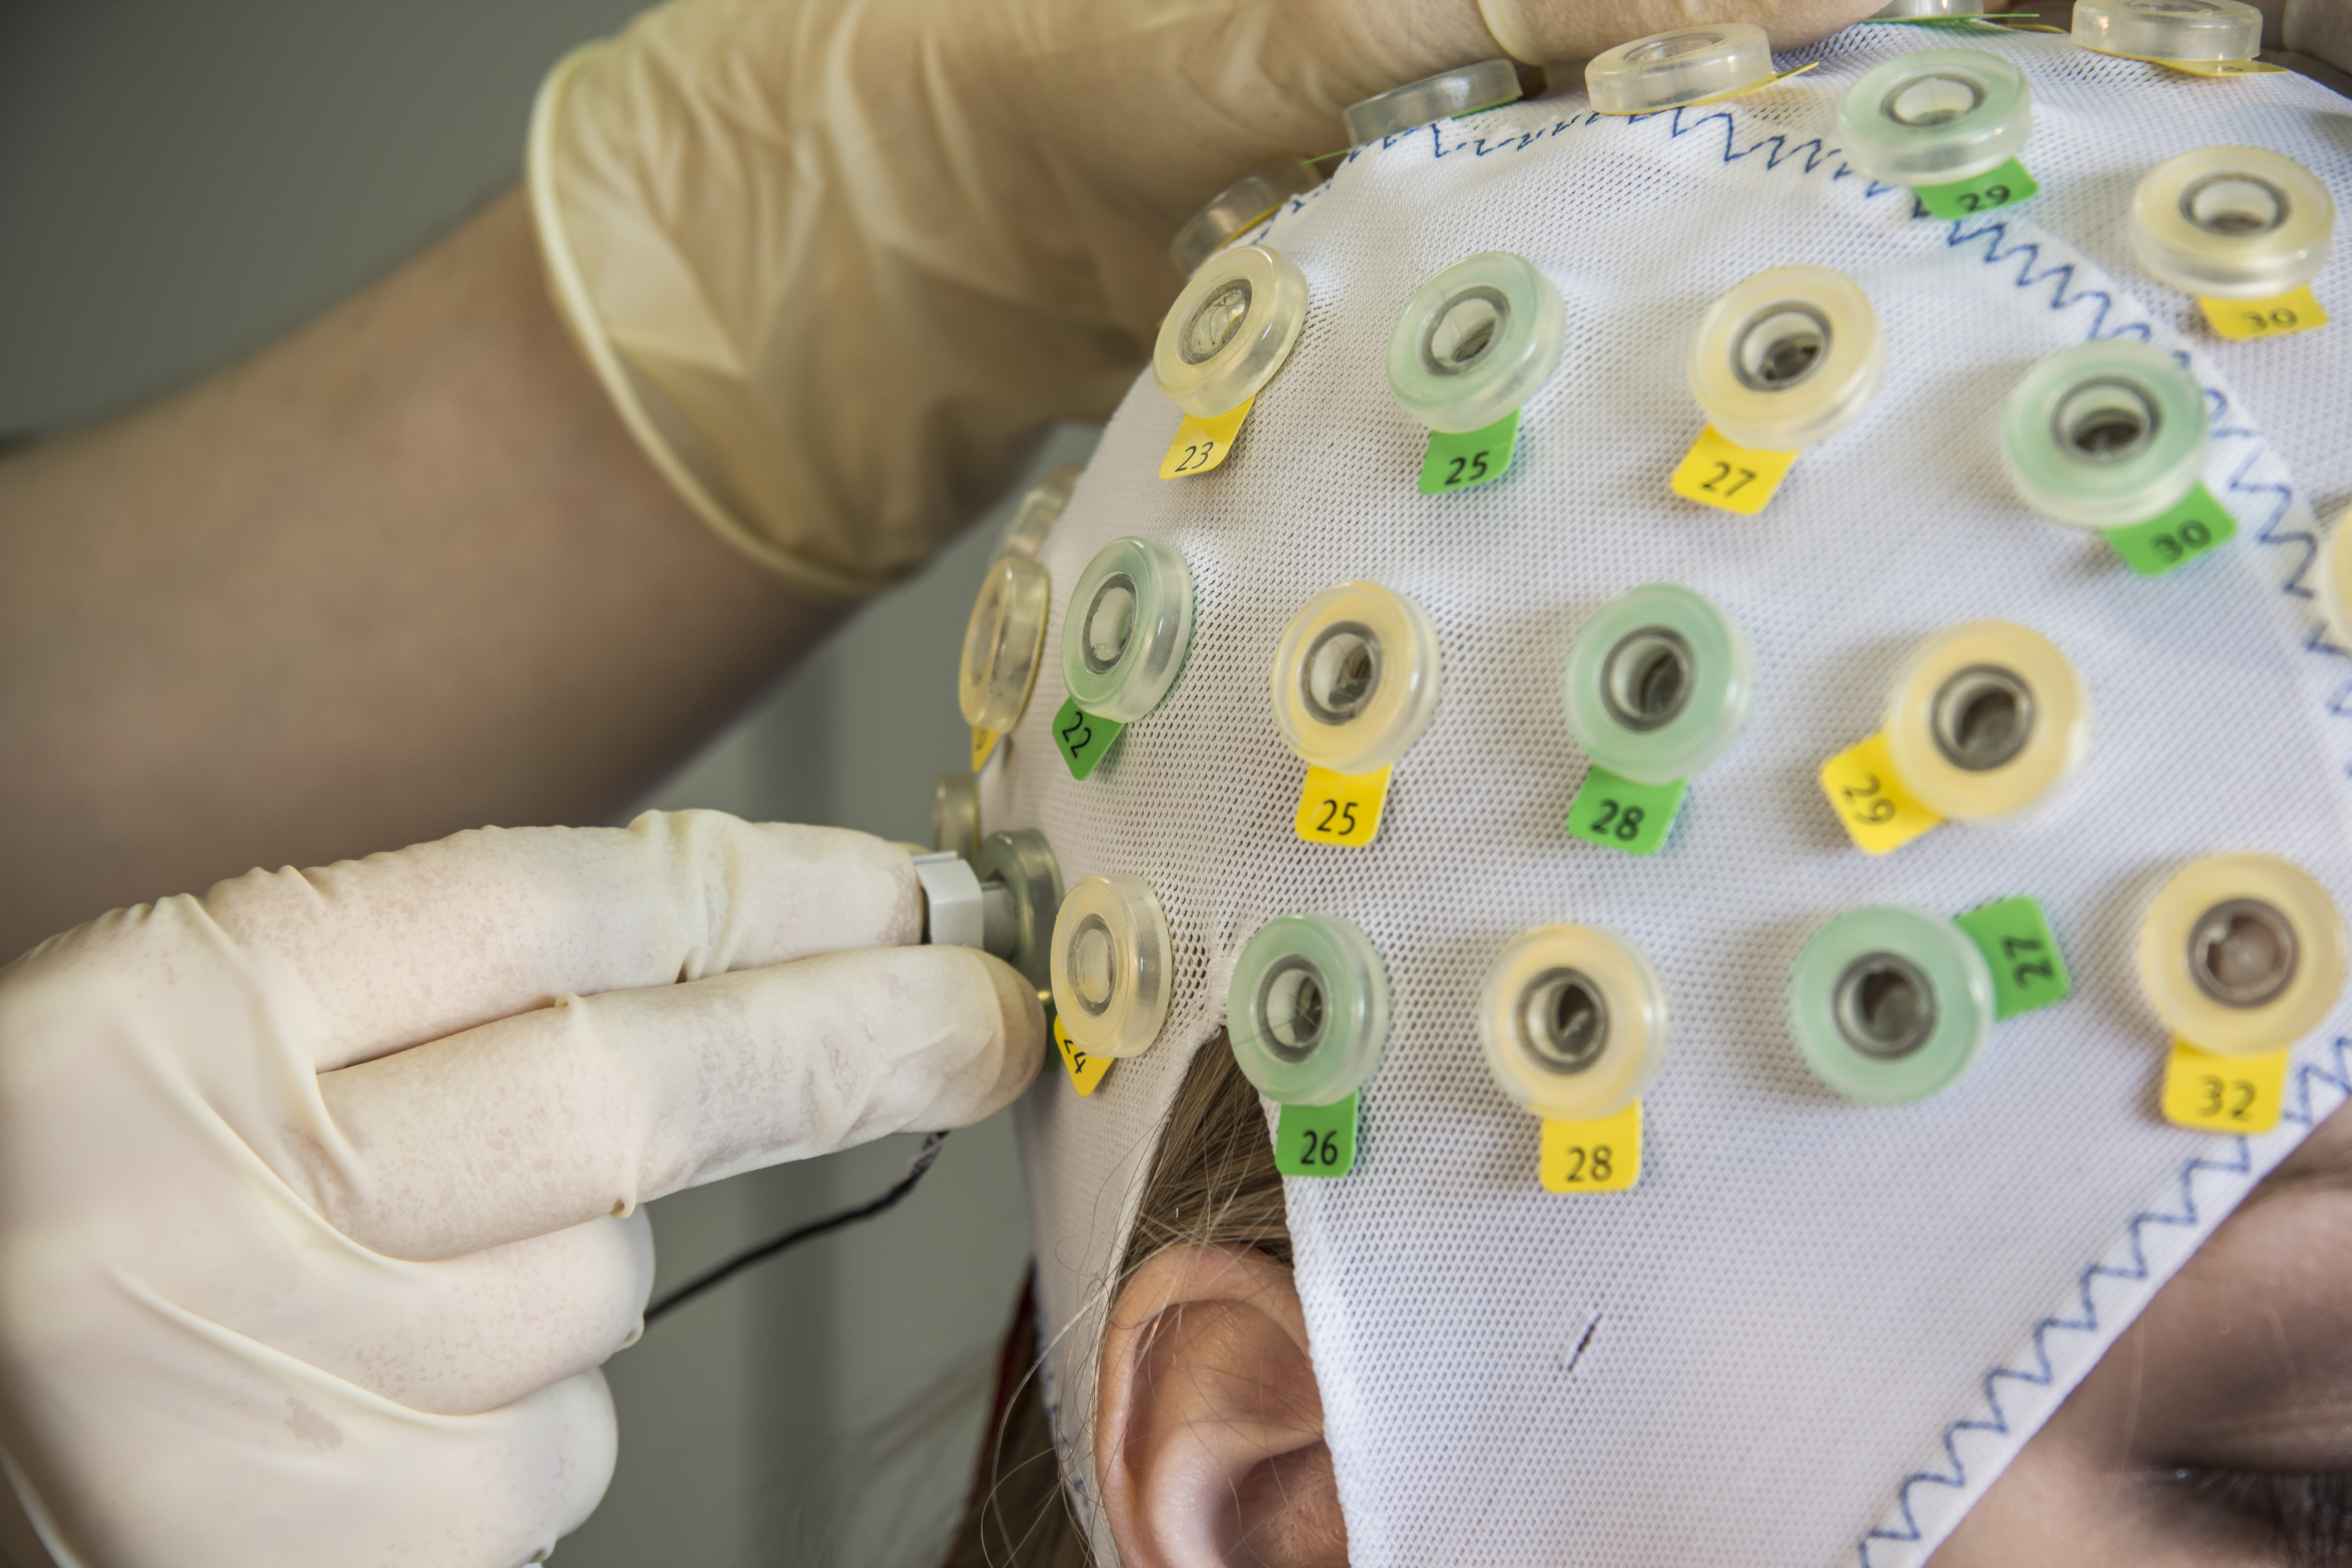 Anbringung der EEG-Elektroden an von Probandin getragener Haube